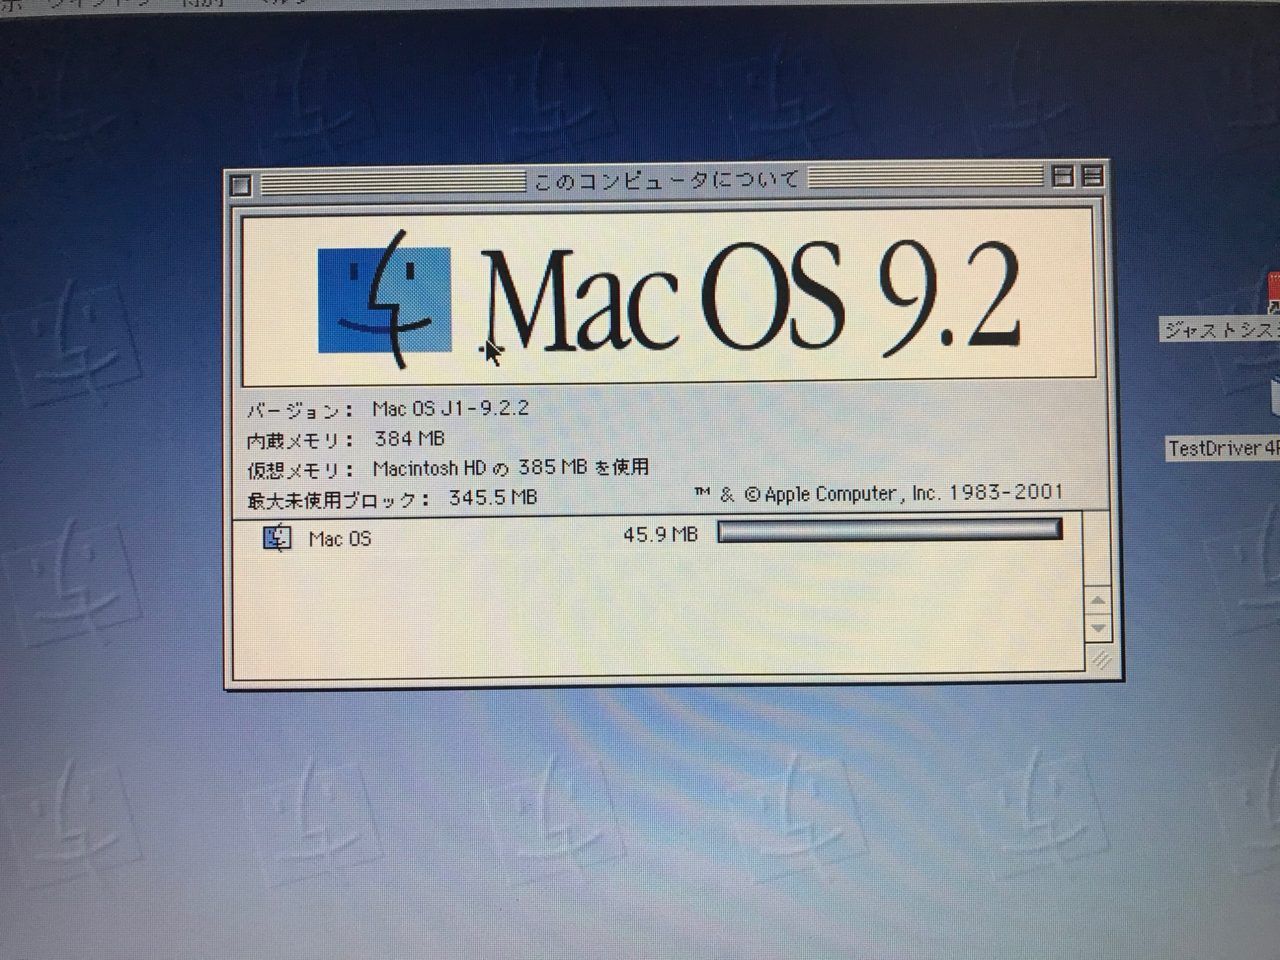 Mac OS 9.2.2